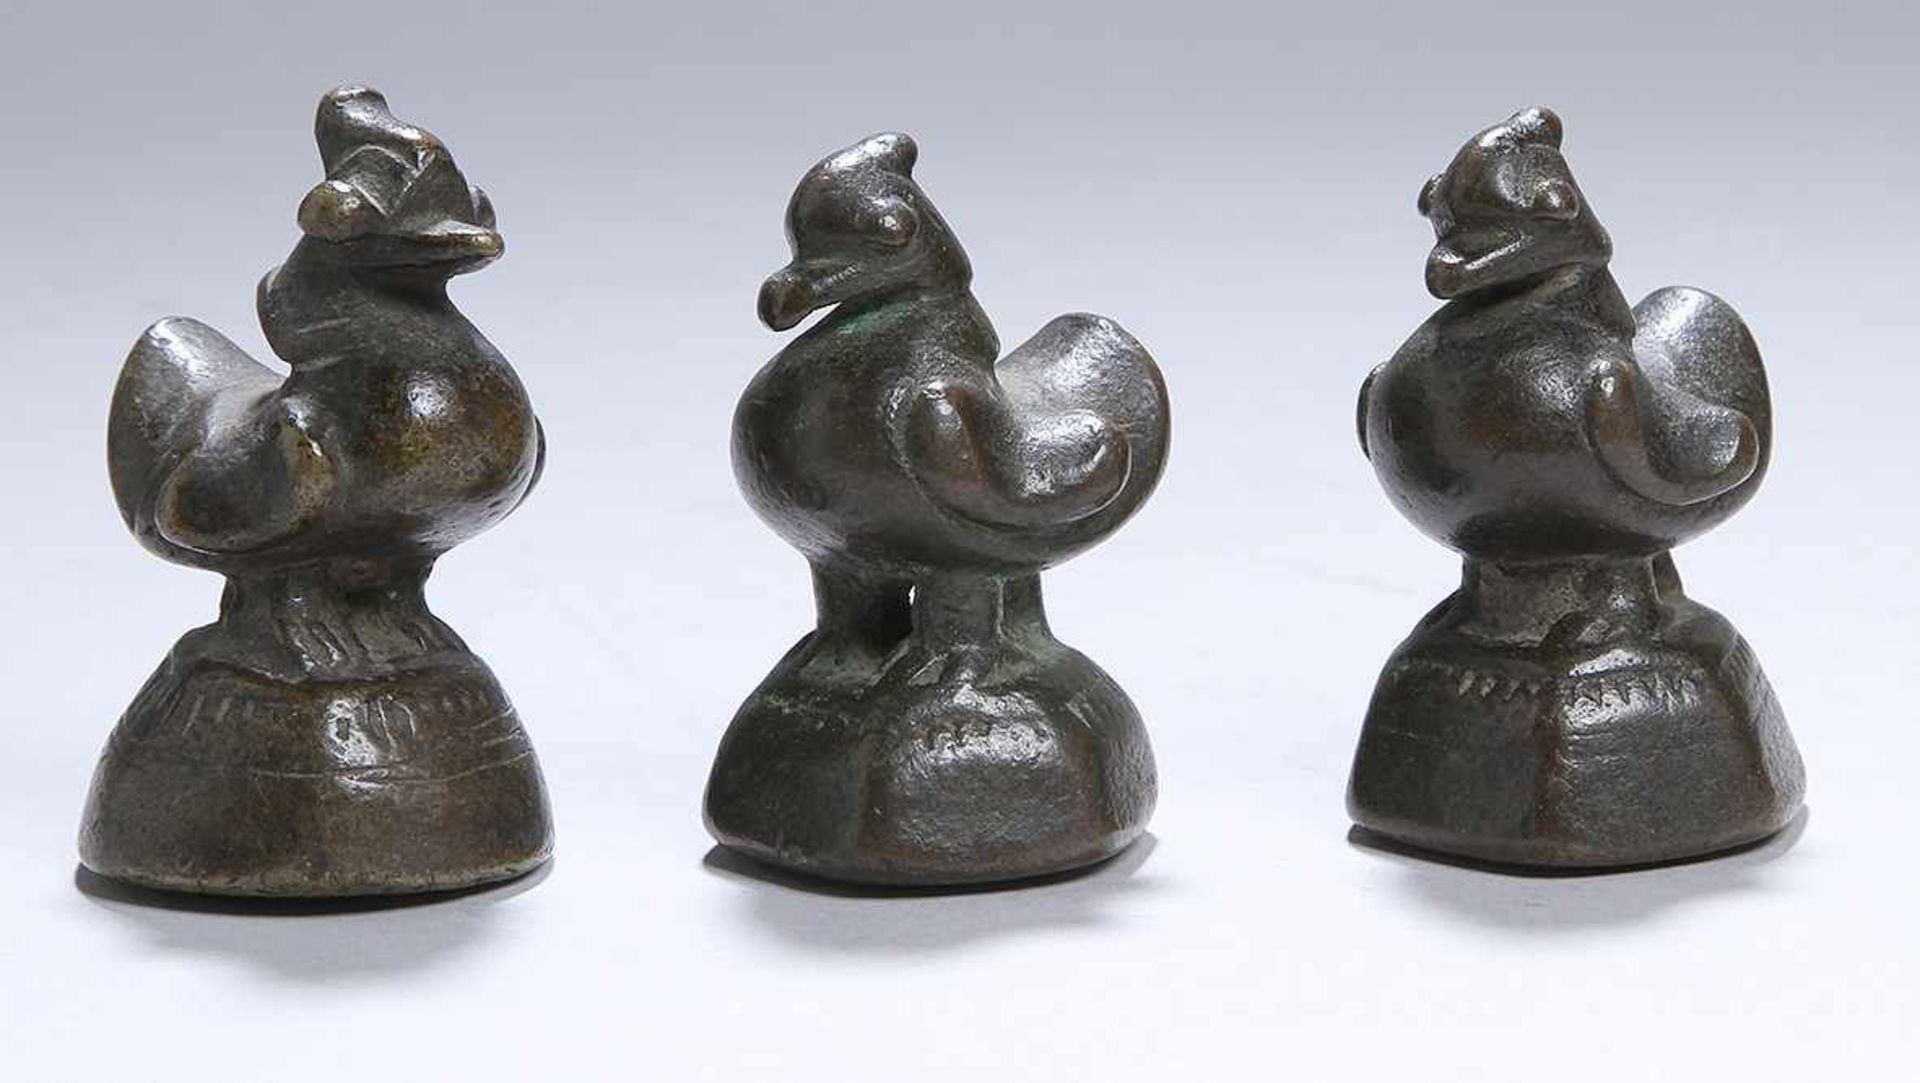 Drei Bronze-Opiumgewichte, Burma, 18./19. Jh., gearbeitet in Form von Enten auf Sockel,dunkle A